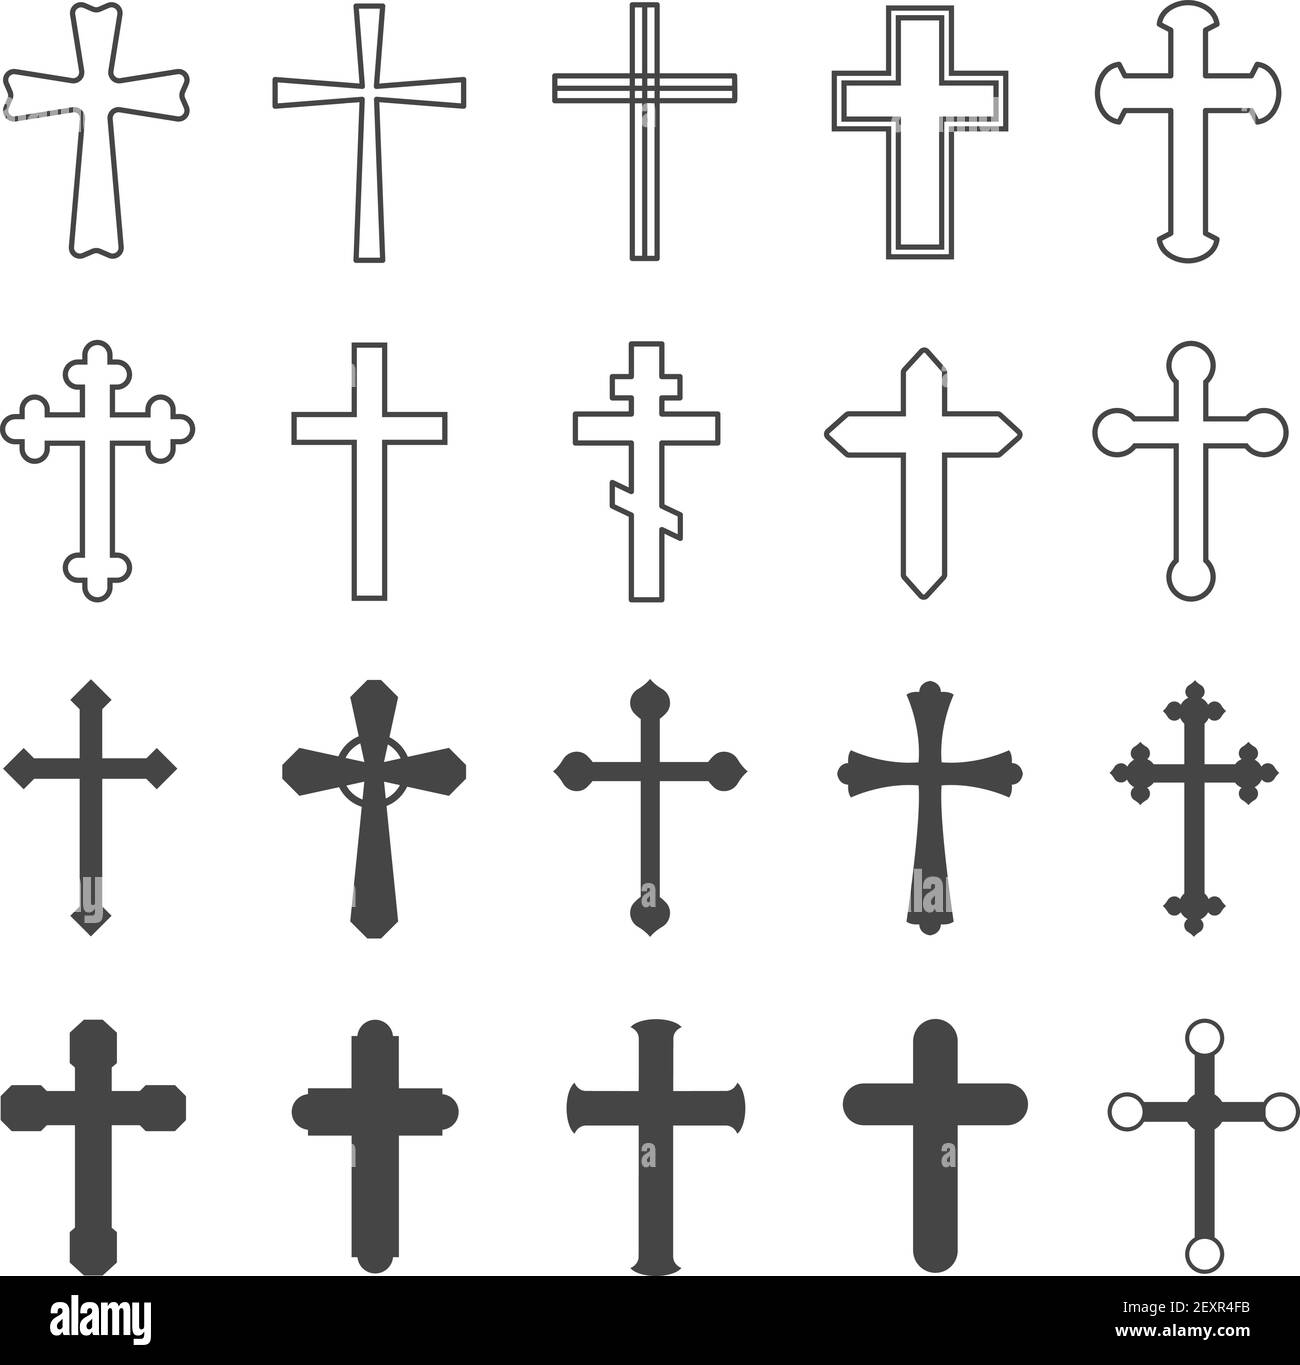 Christliche Kreuze. Dekorative Kruzifix Religion katholisches Symbol, orthodoxer Glaube Kirche Kreuz Design, isoliert flach Vektor-Set Stock Vektor